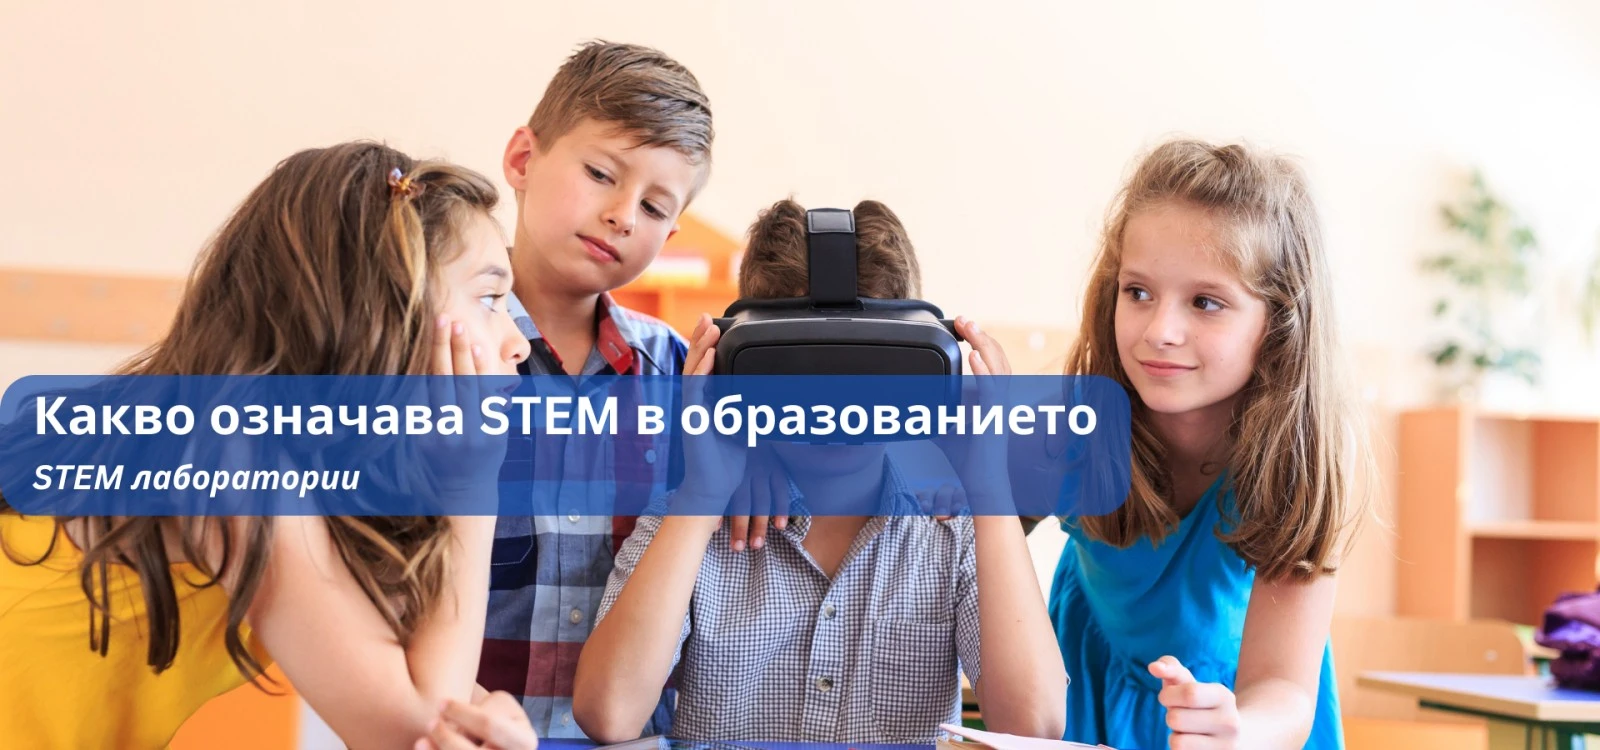 Какво означава STEM в образованието 